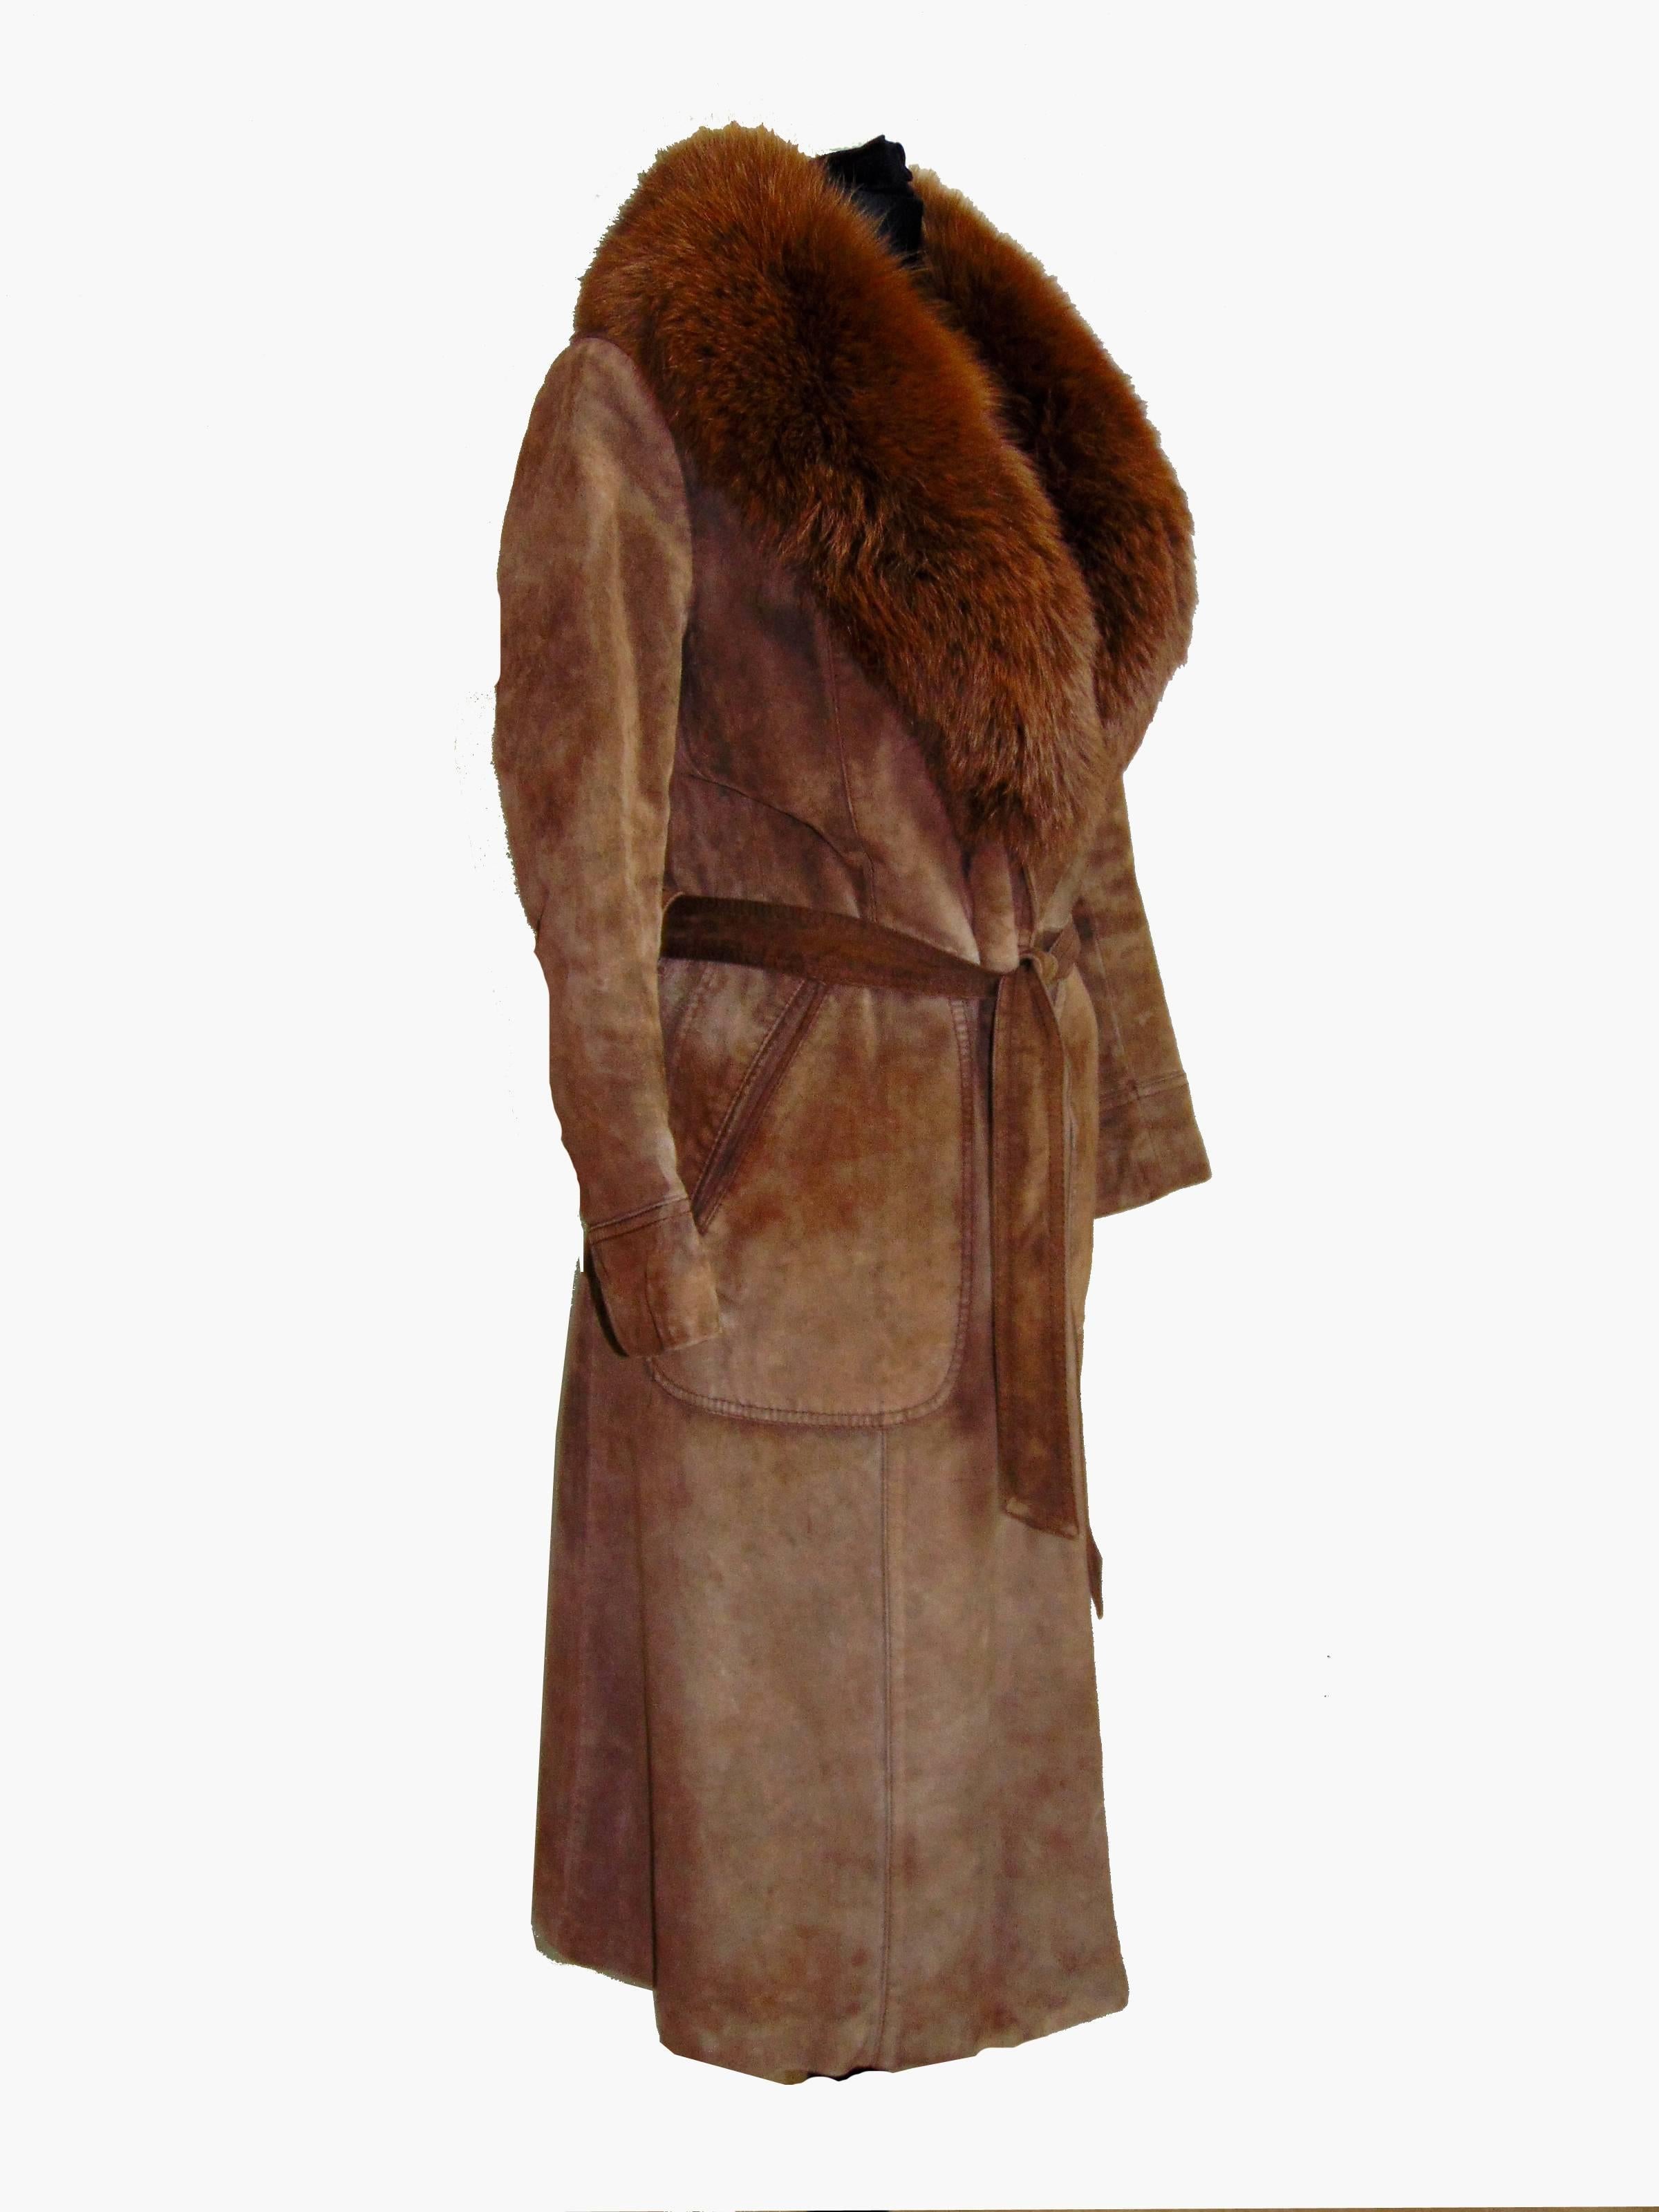 70s brown coat